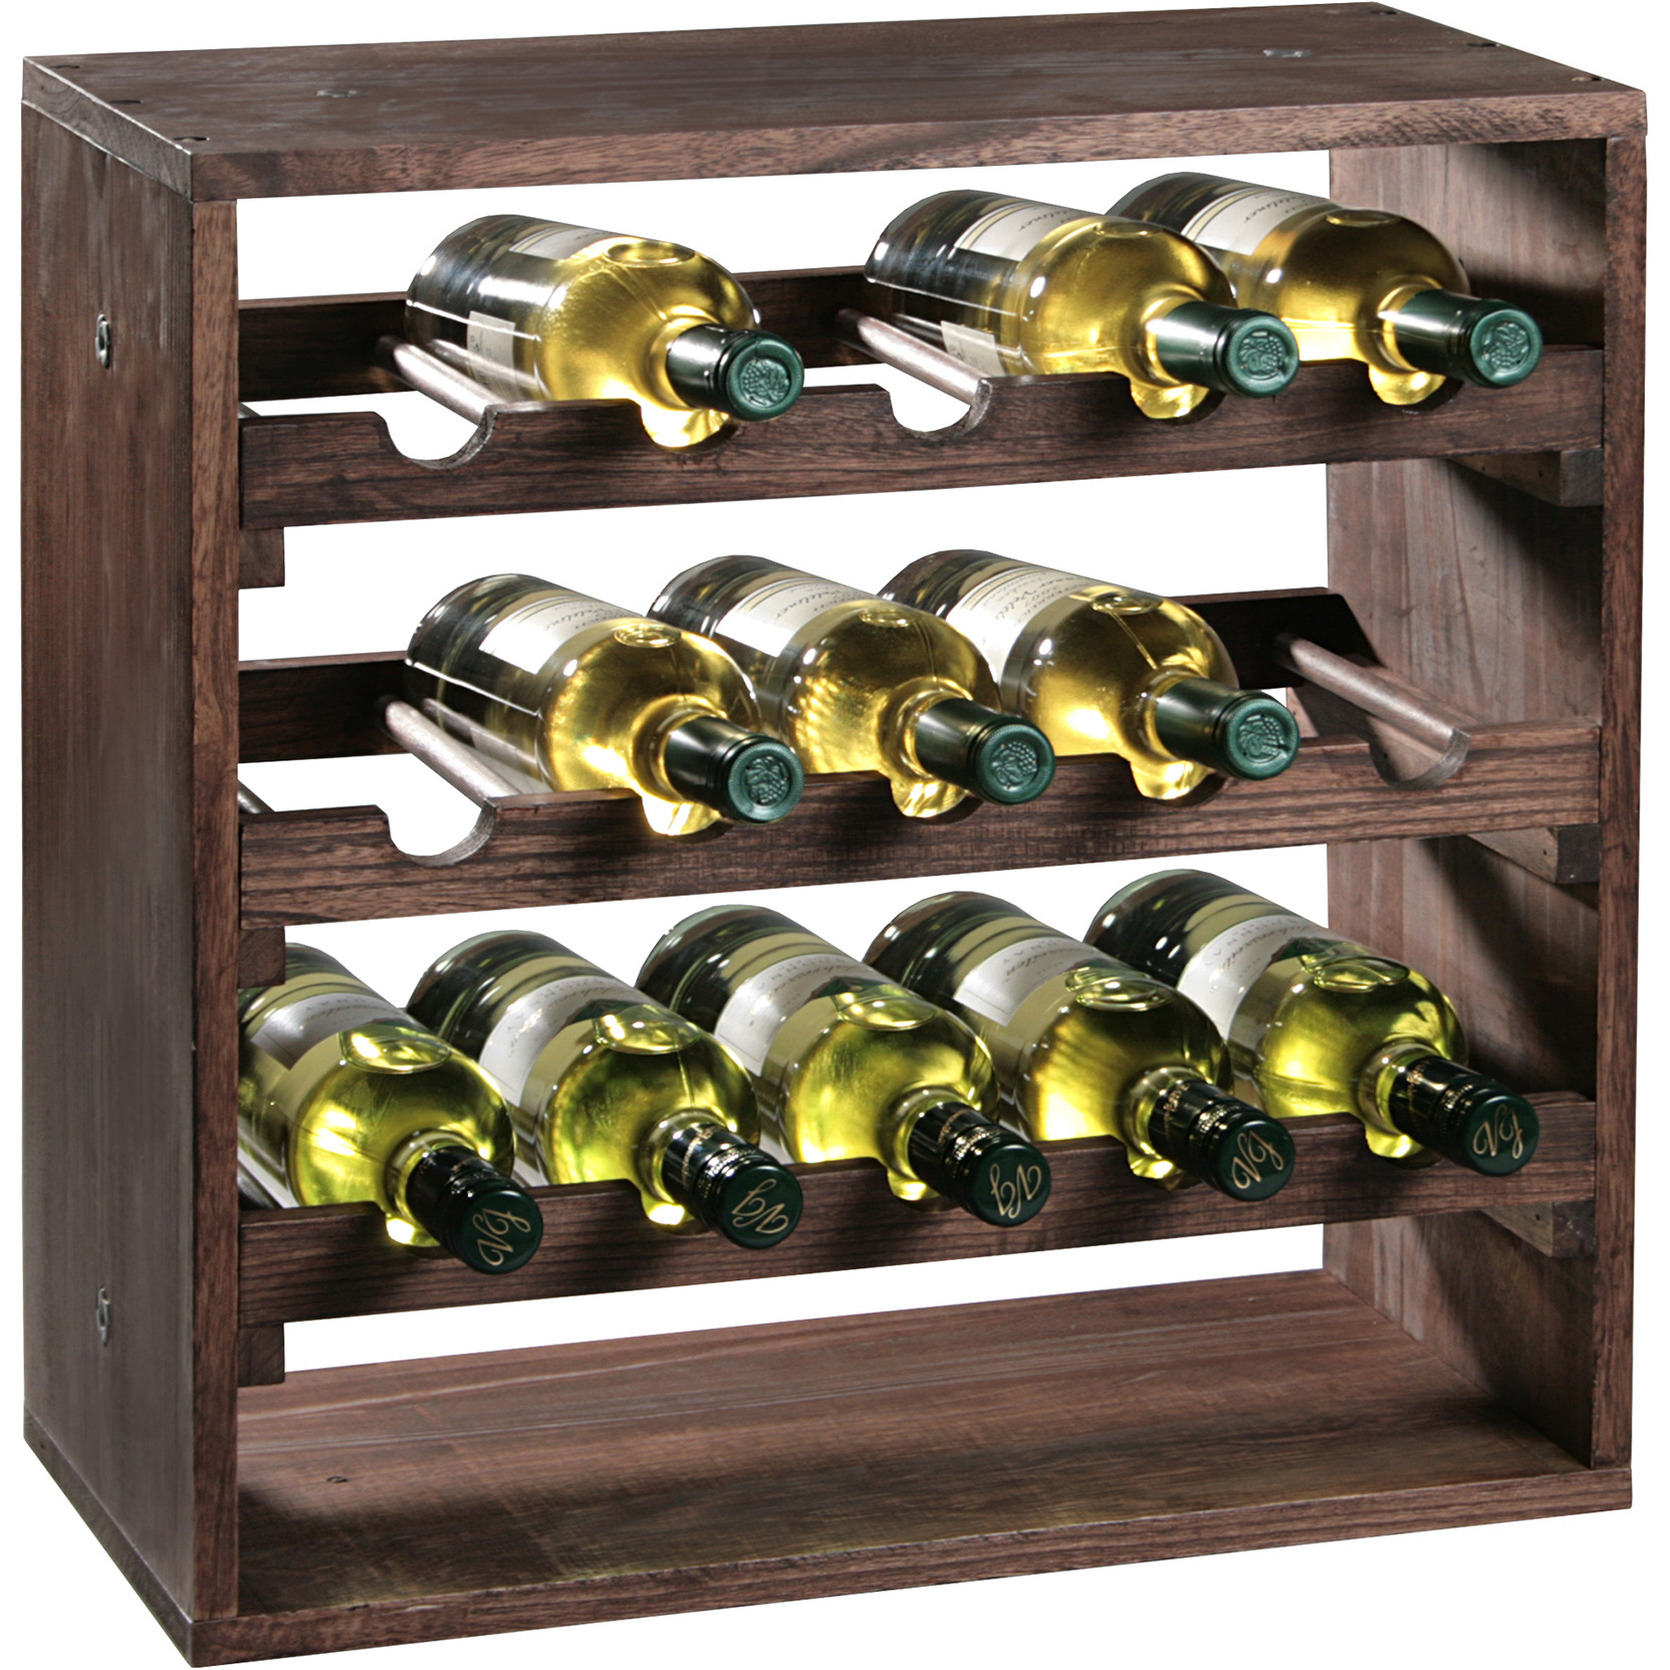 1x Houten wijnflesrek-wijnrekken staand voor 15 flessen 25 x 50 x 50 cm